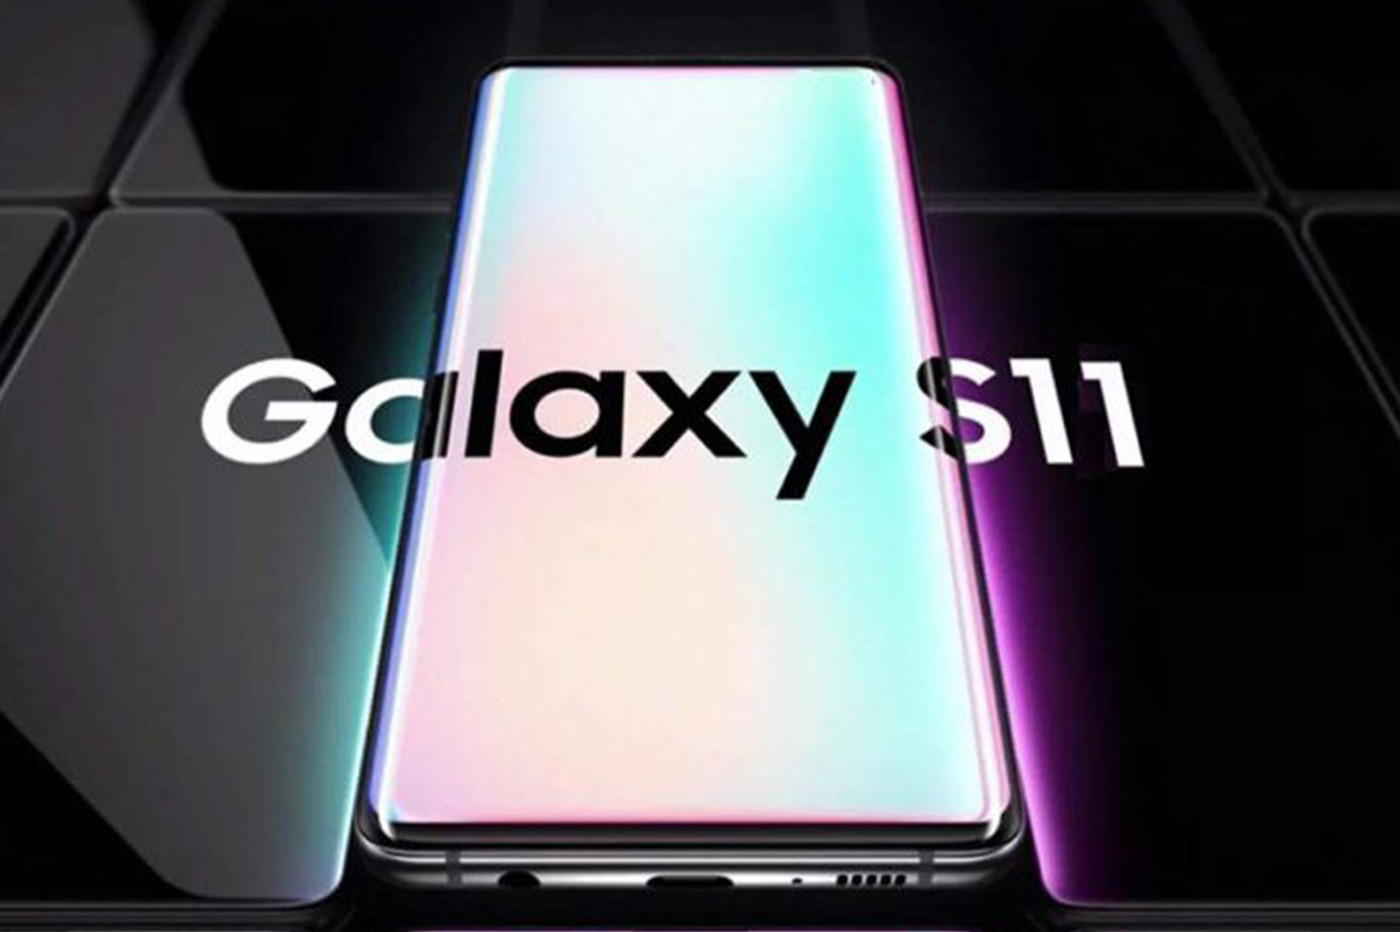 Vous pourrez débloquer le Galaxy S11 avec deux doigts